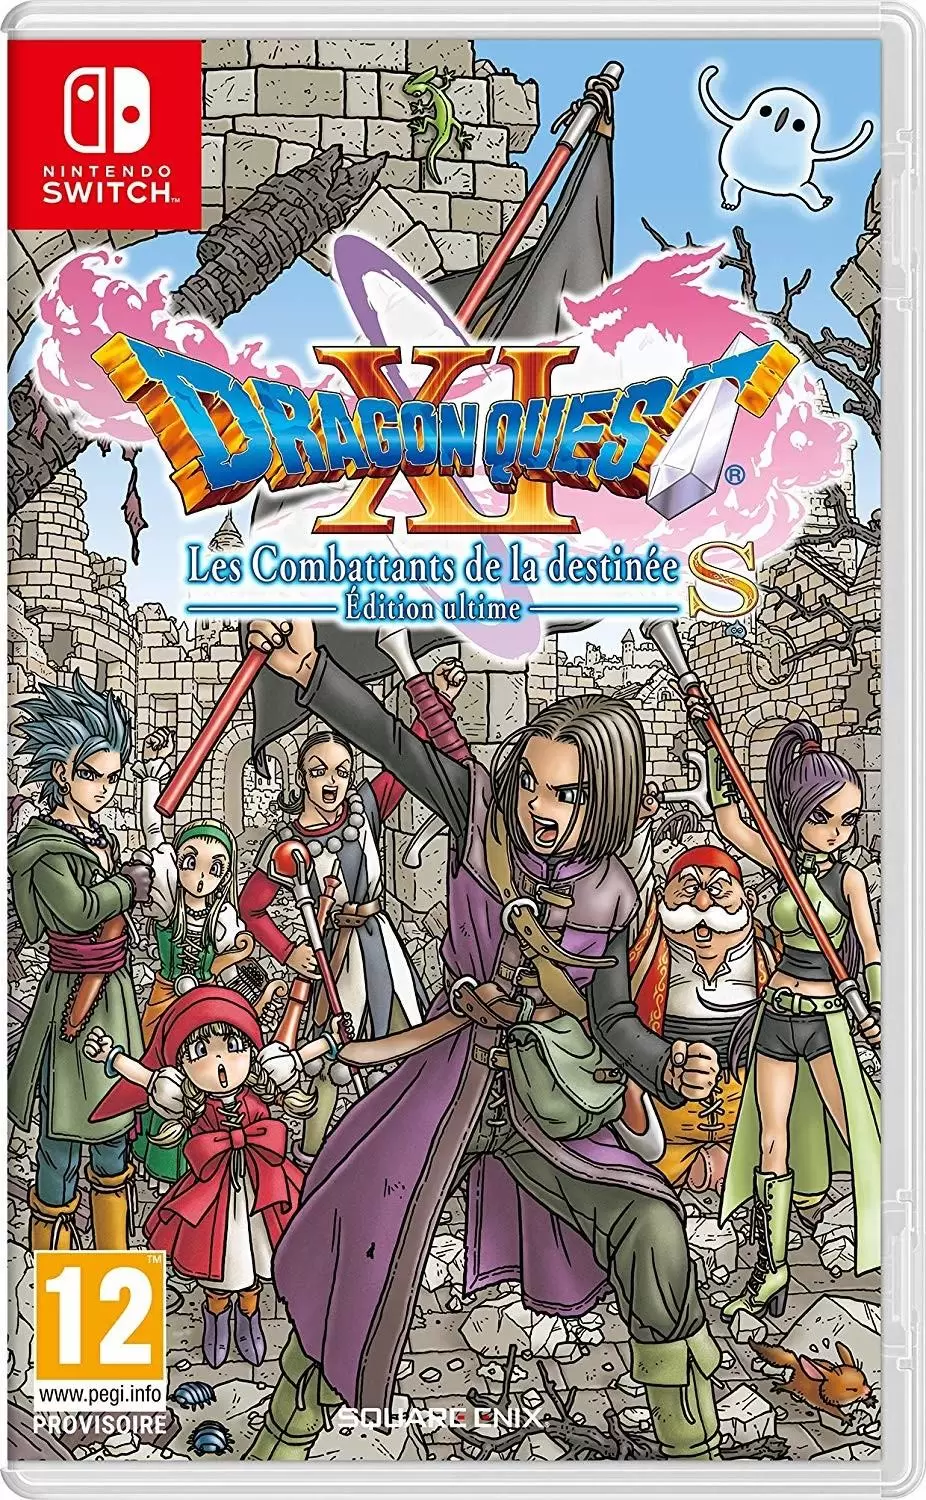 Nintendo Switch Games - Dragon Quest XI Les Combattants De La Destinée